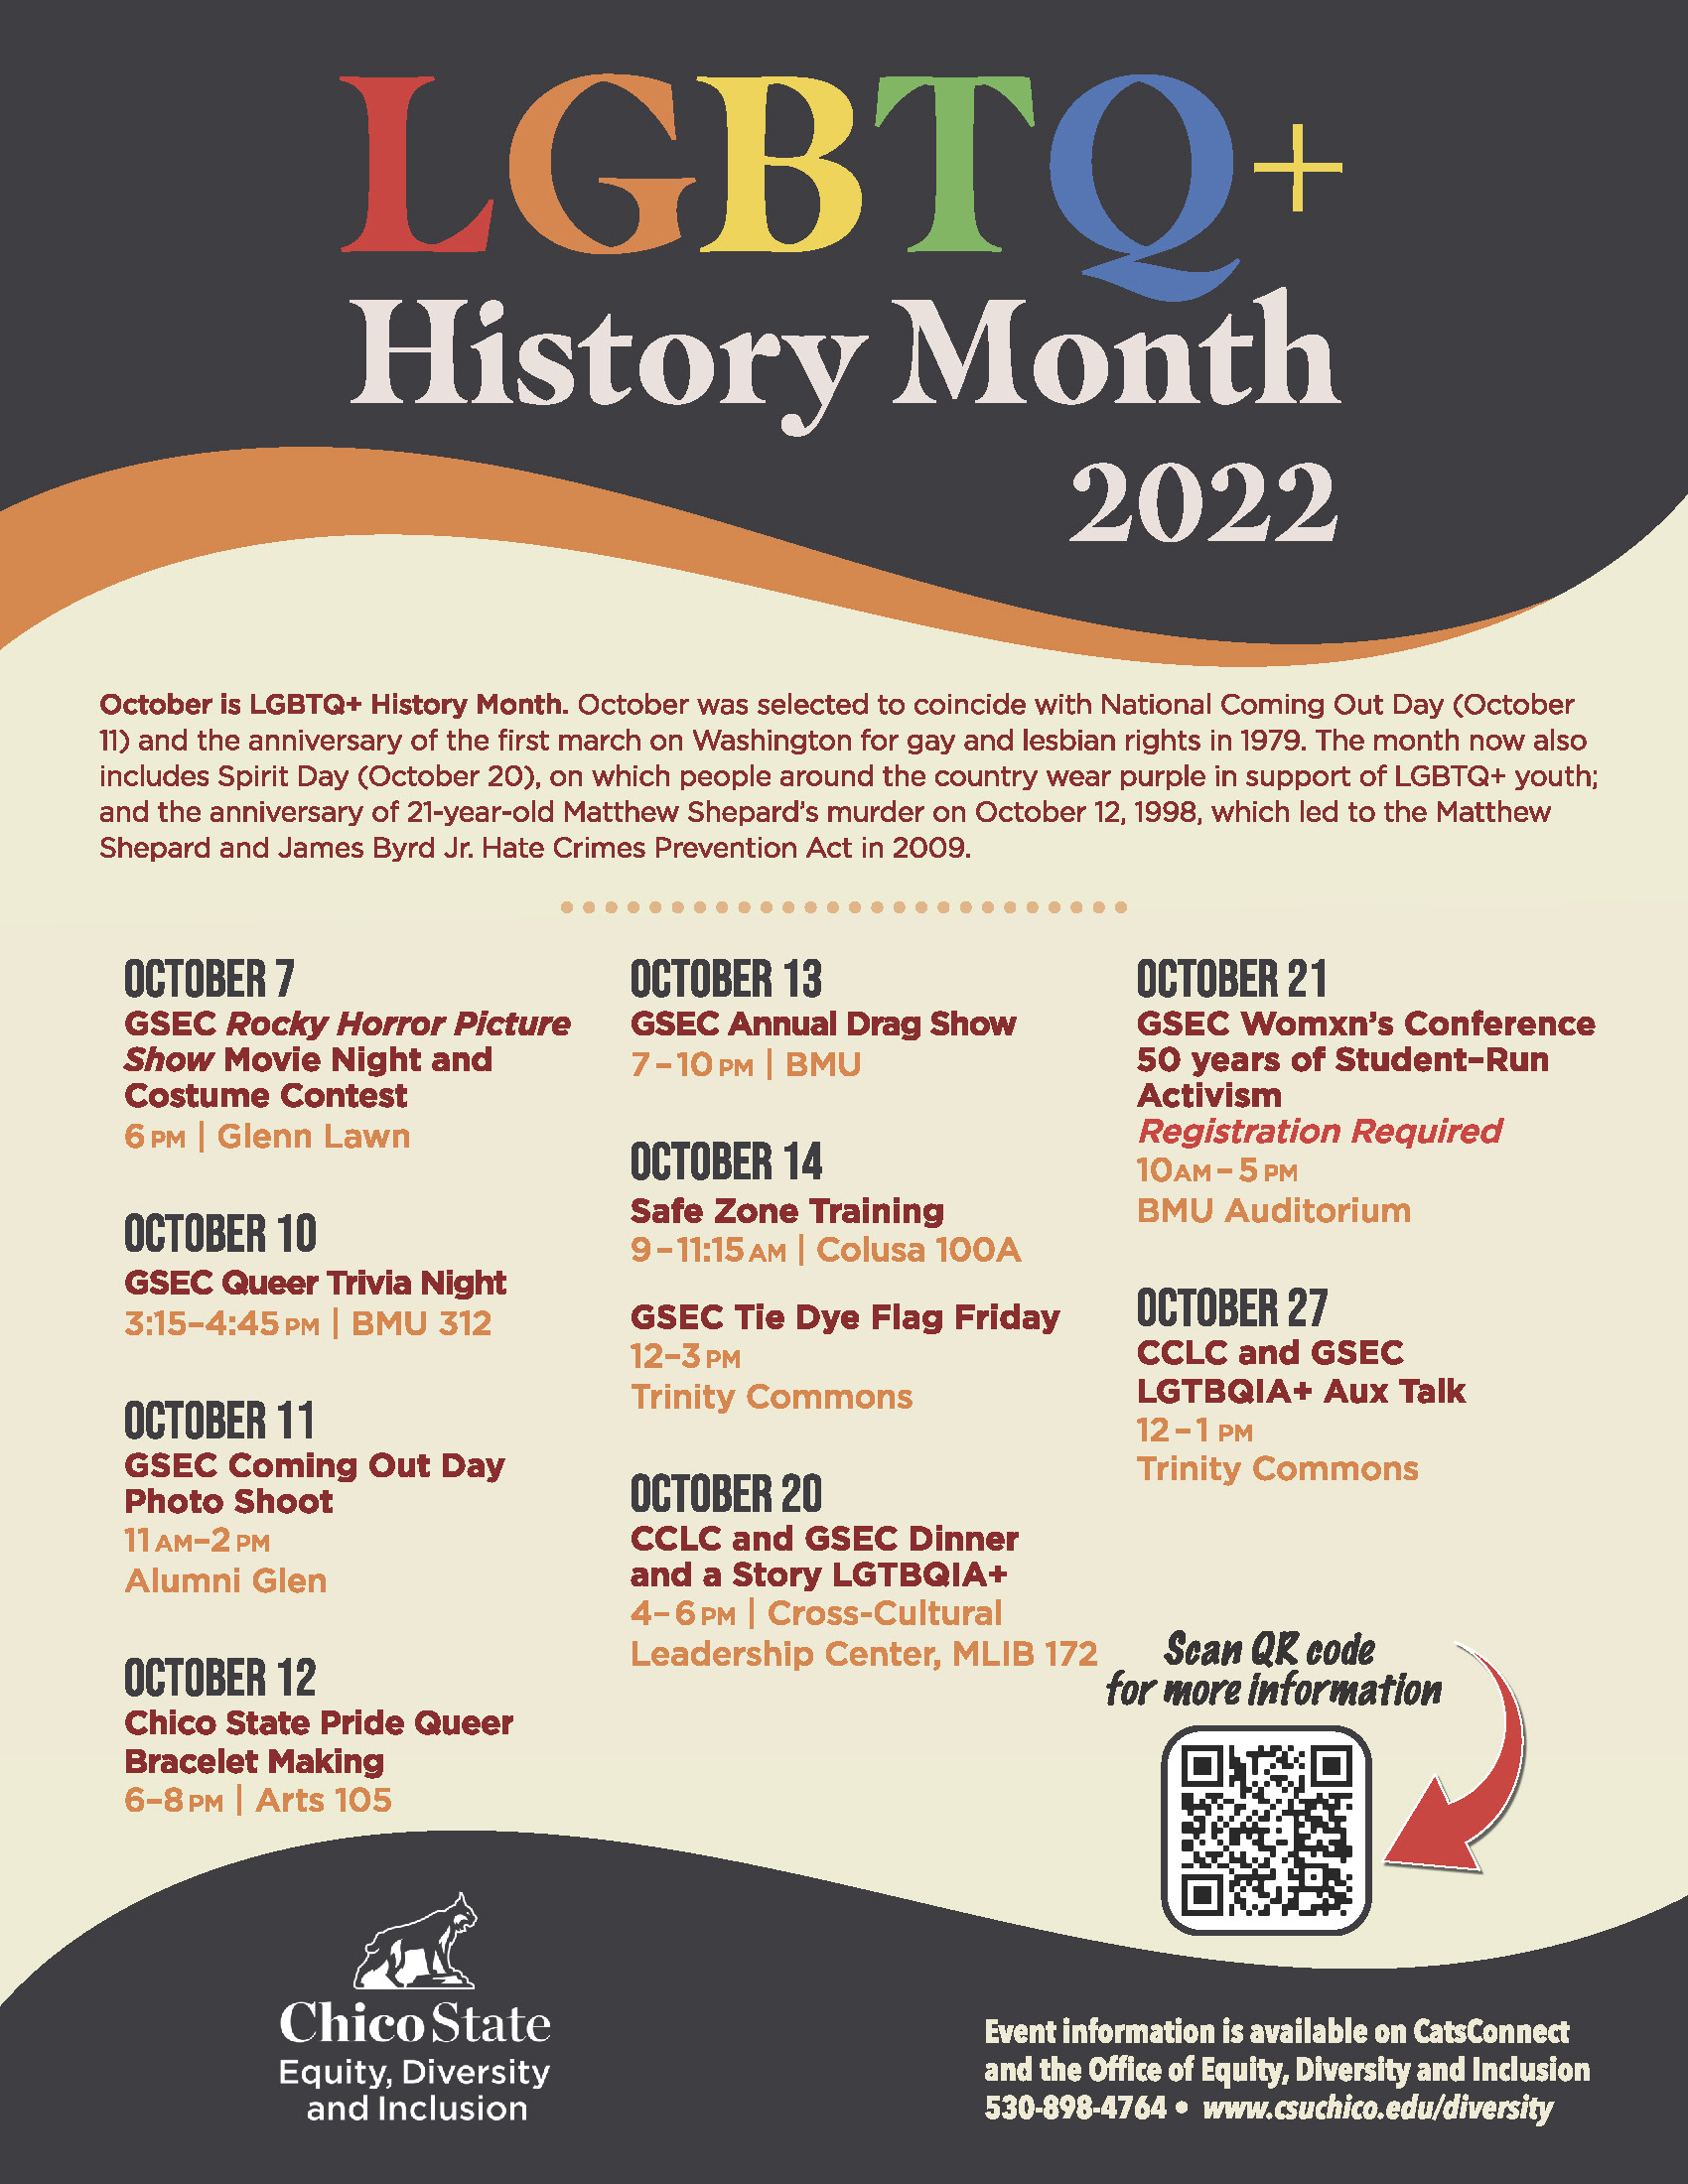 LGBTQ+ History Month 2022 Flyer